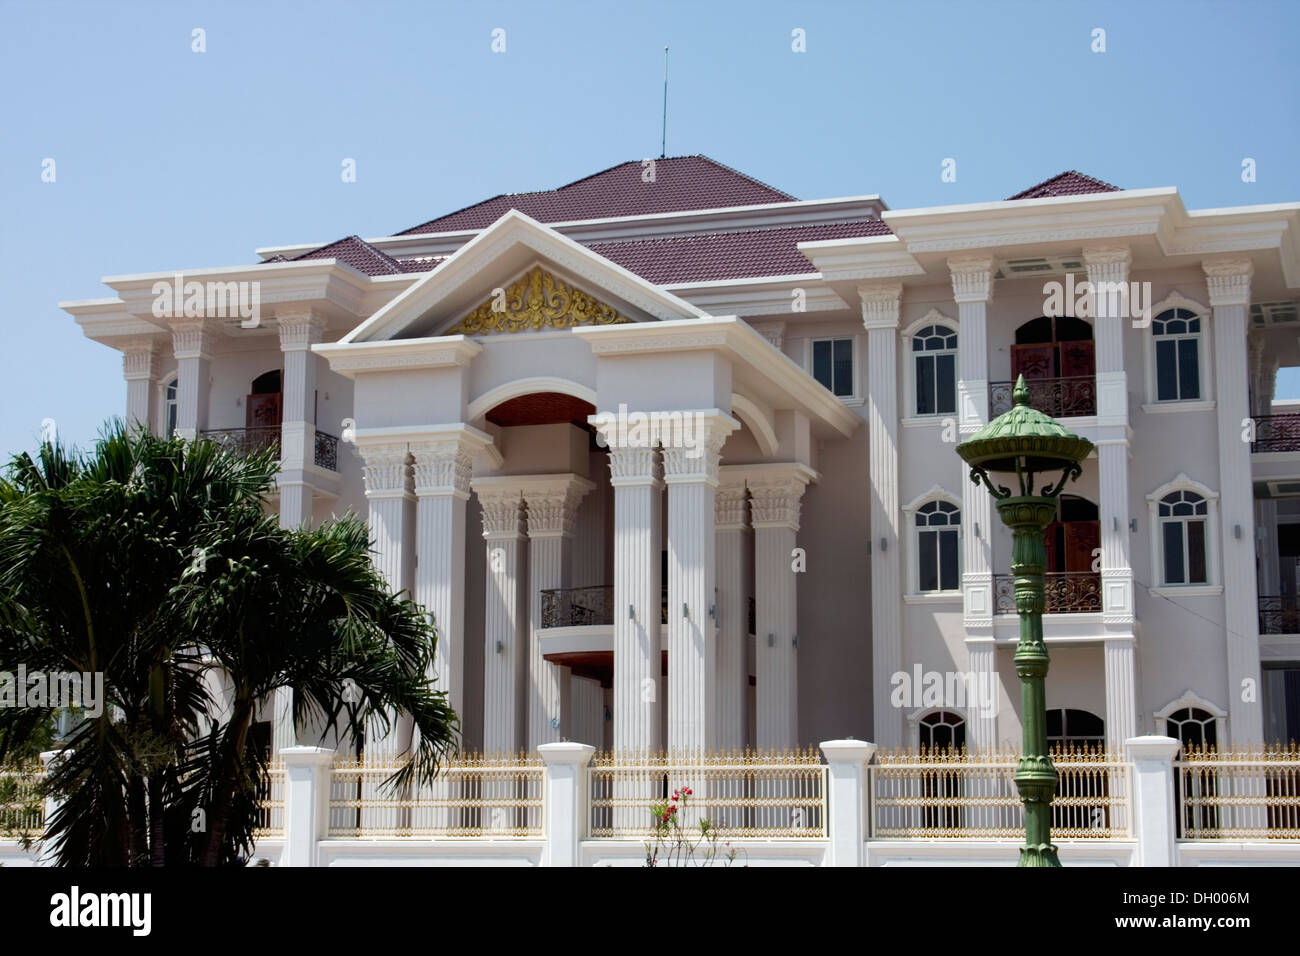 Ein neues Herrenhaus, kambodschanische Premierminister Hun Sen Bruder angehören, ist das größte Haus in Kampong Cham, Kambodscha. Stockfoto